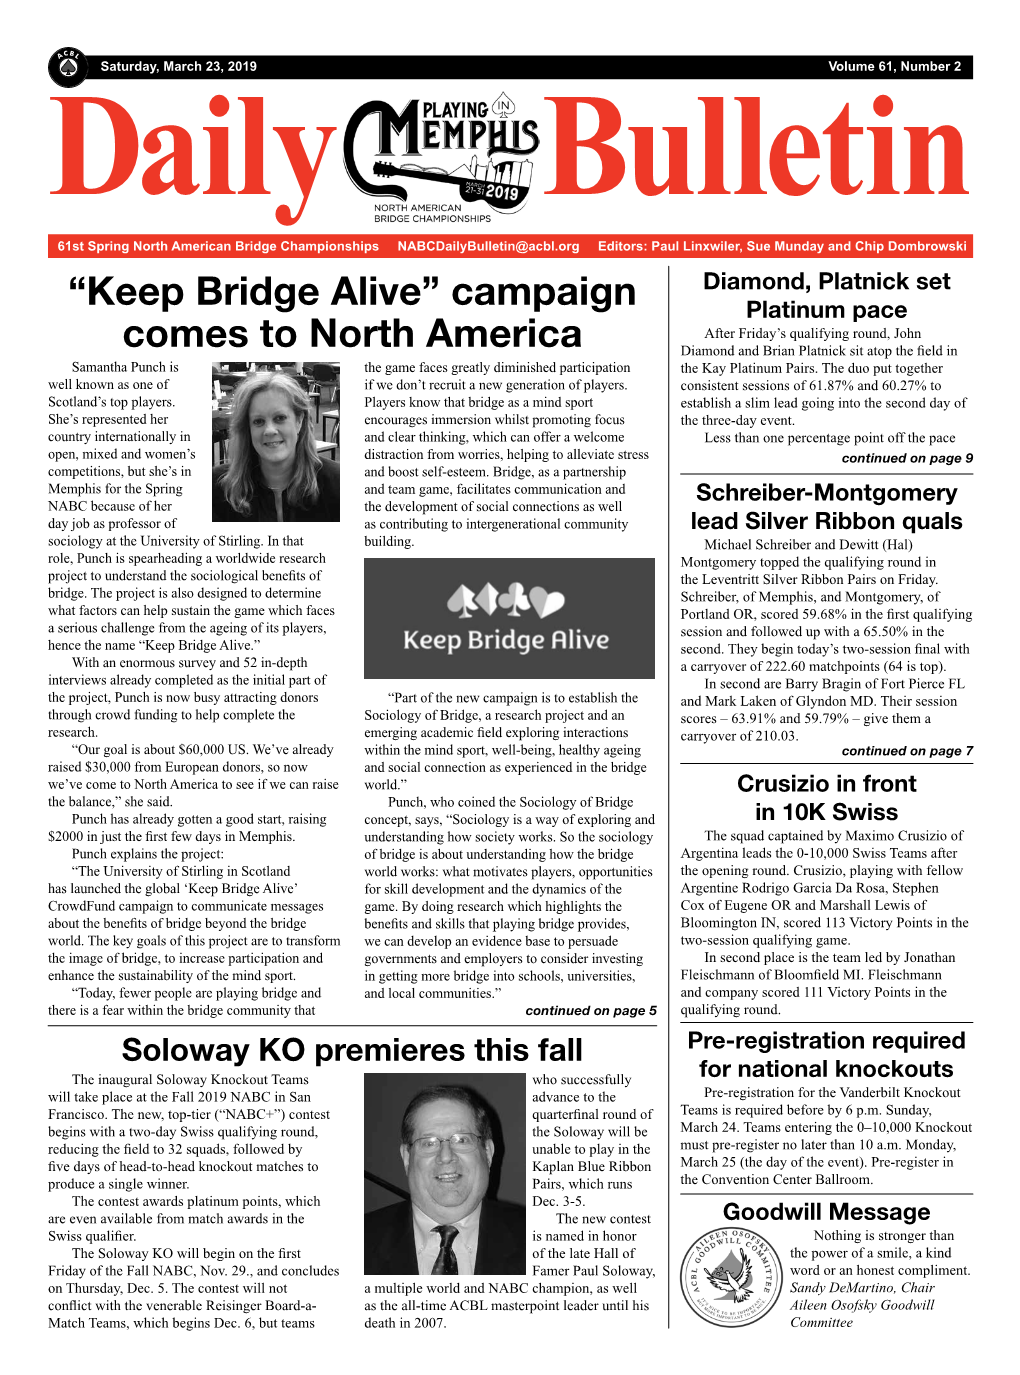 “Keep Bridge Alive” Campaign Comes to North America